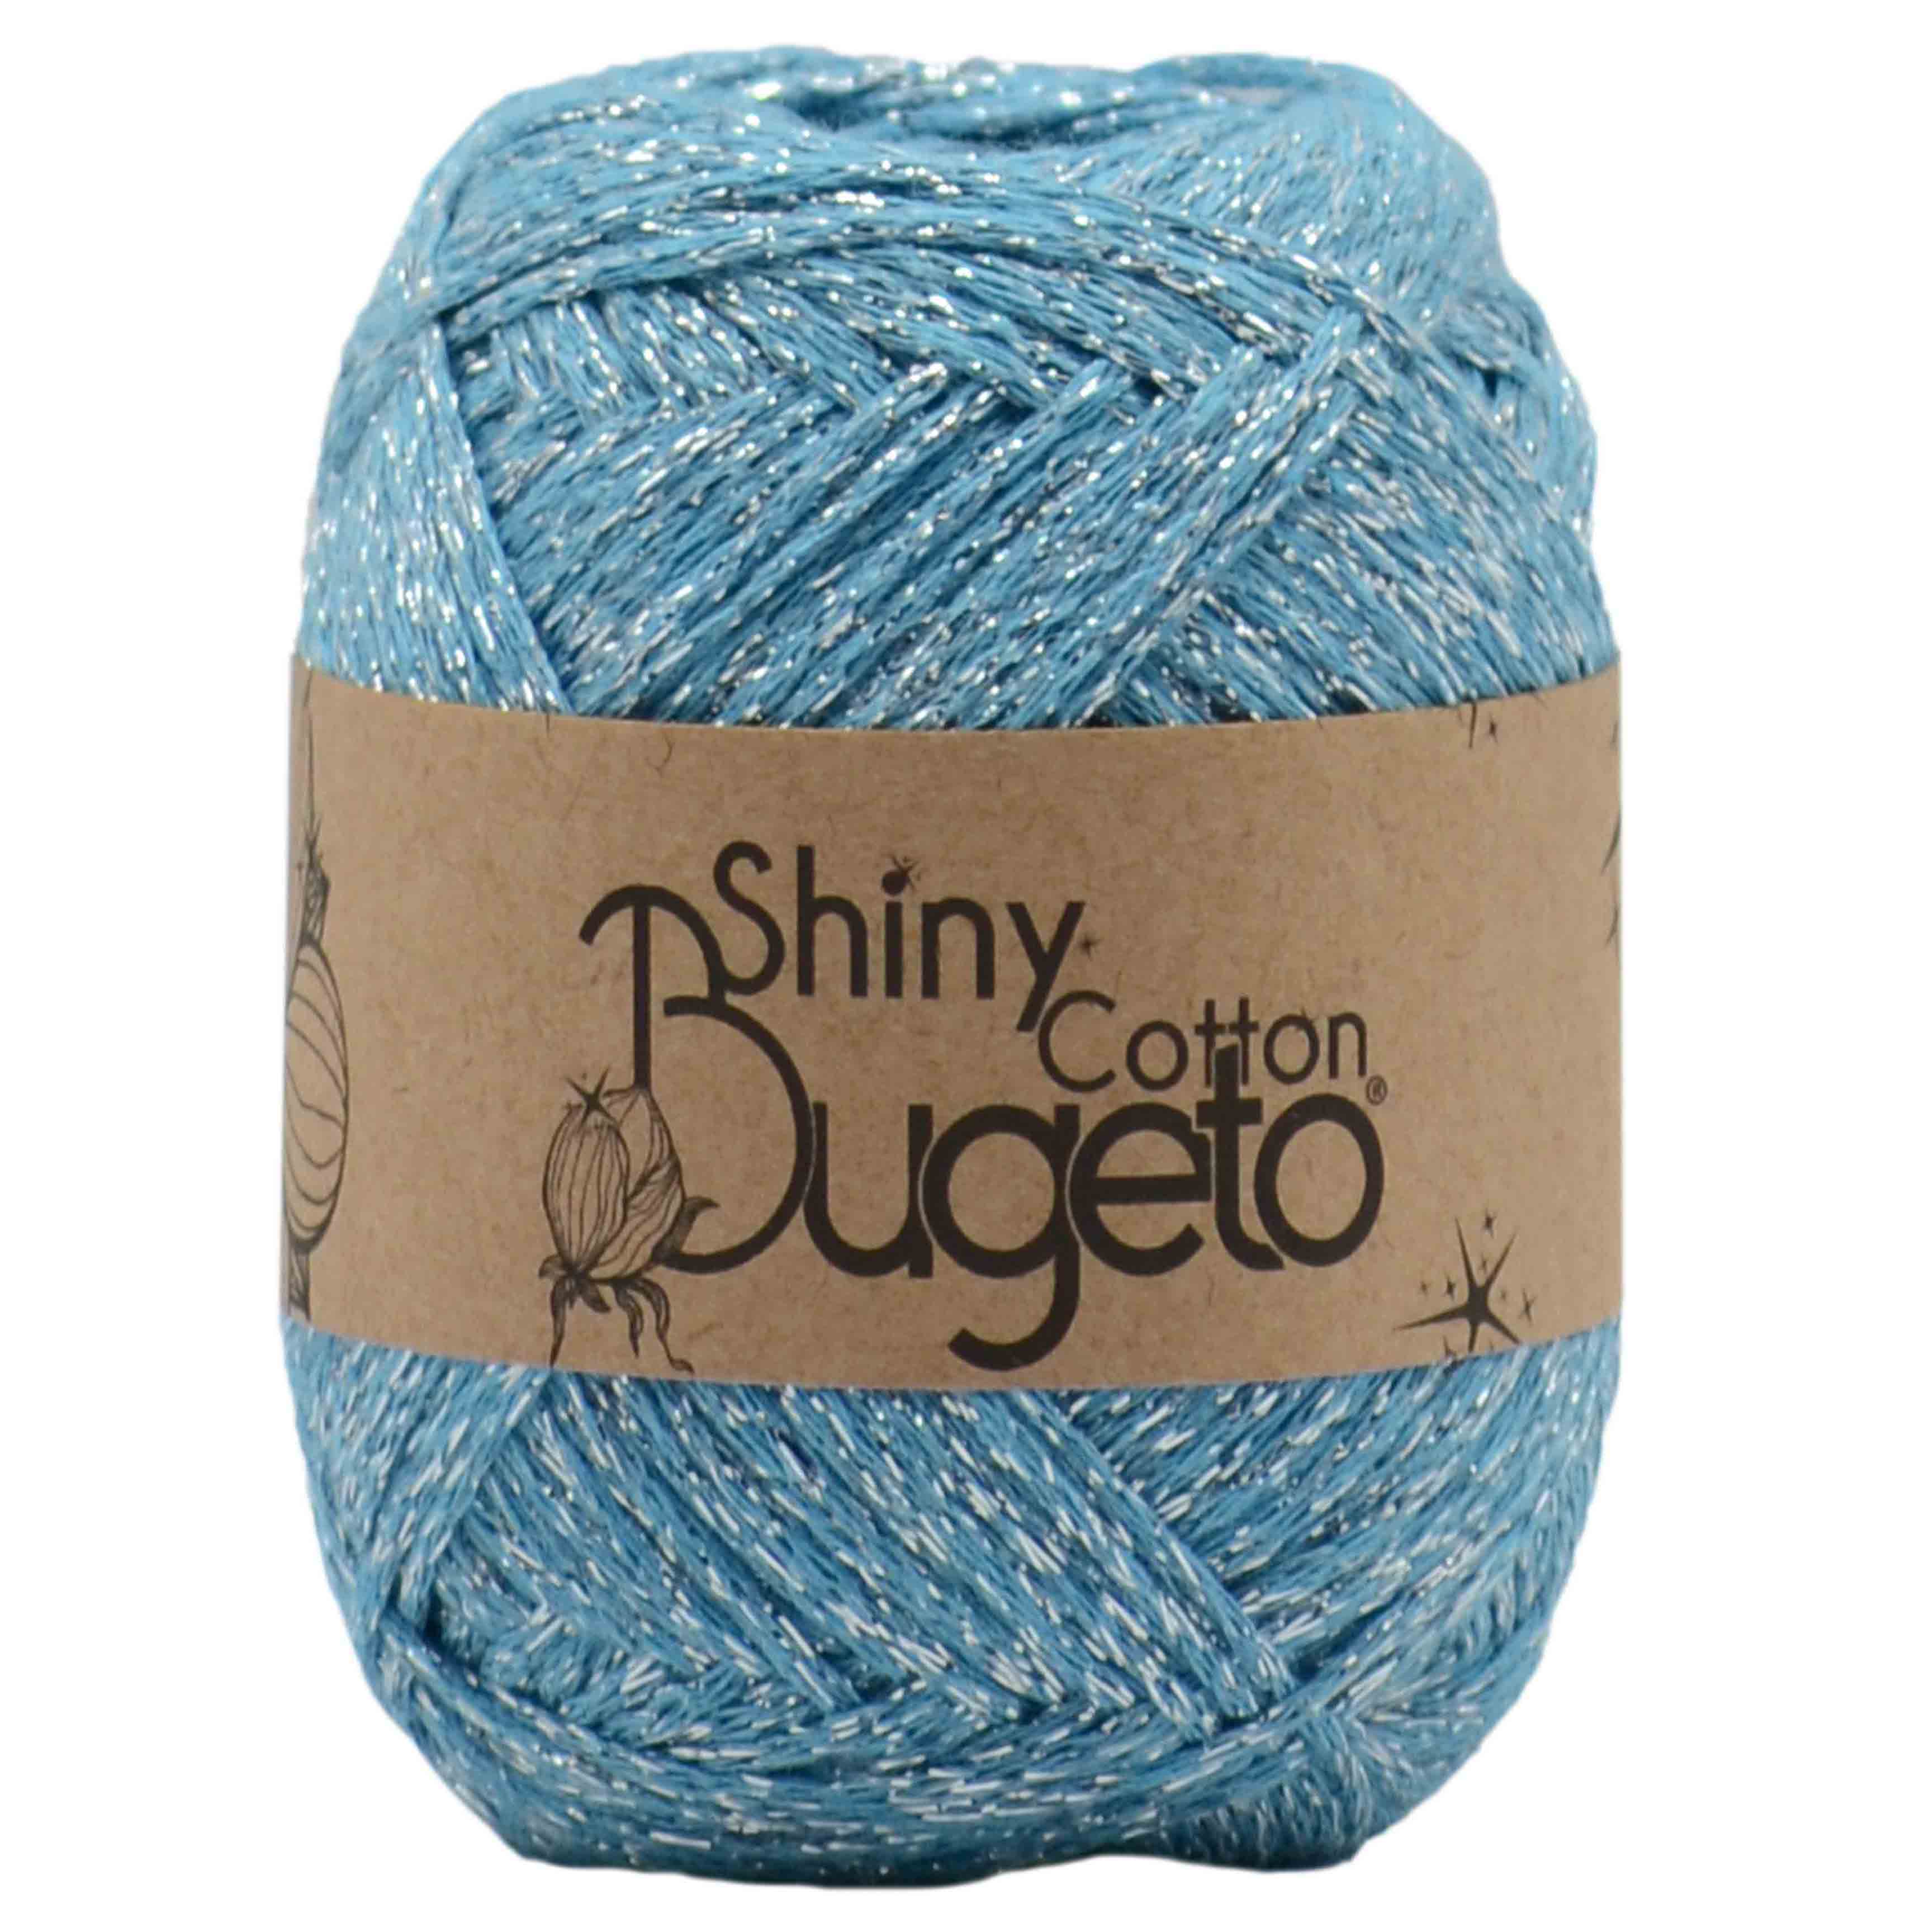 shiny cotton yarn cotton yarn glitter cotton yarn shinny yarns bugeto yarn